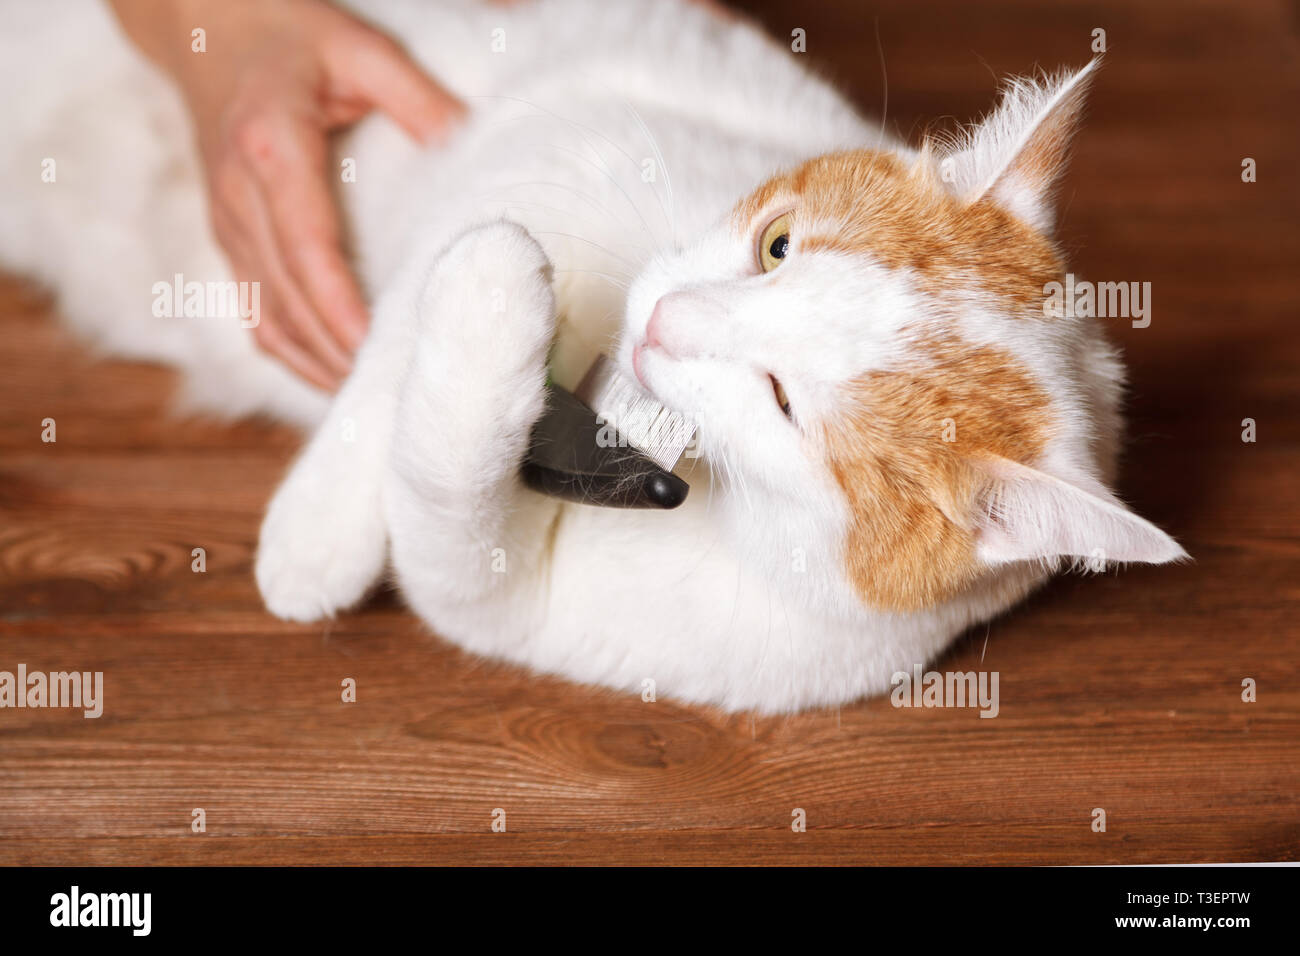 Blanco-rojo dulce cat sosteniendo un peine. Peinar los gatos domésticos. El concepto de cuidado de mascotas. Foto de stock